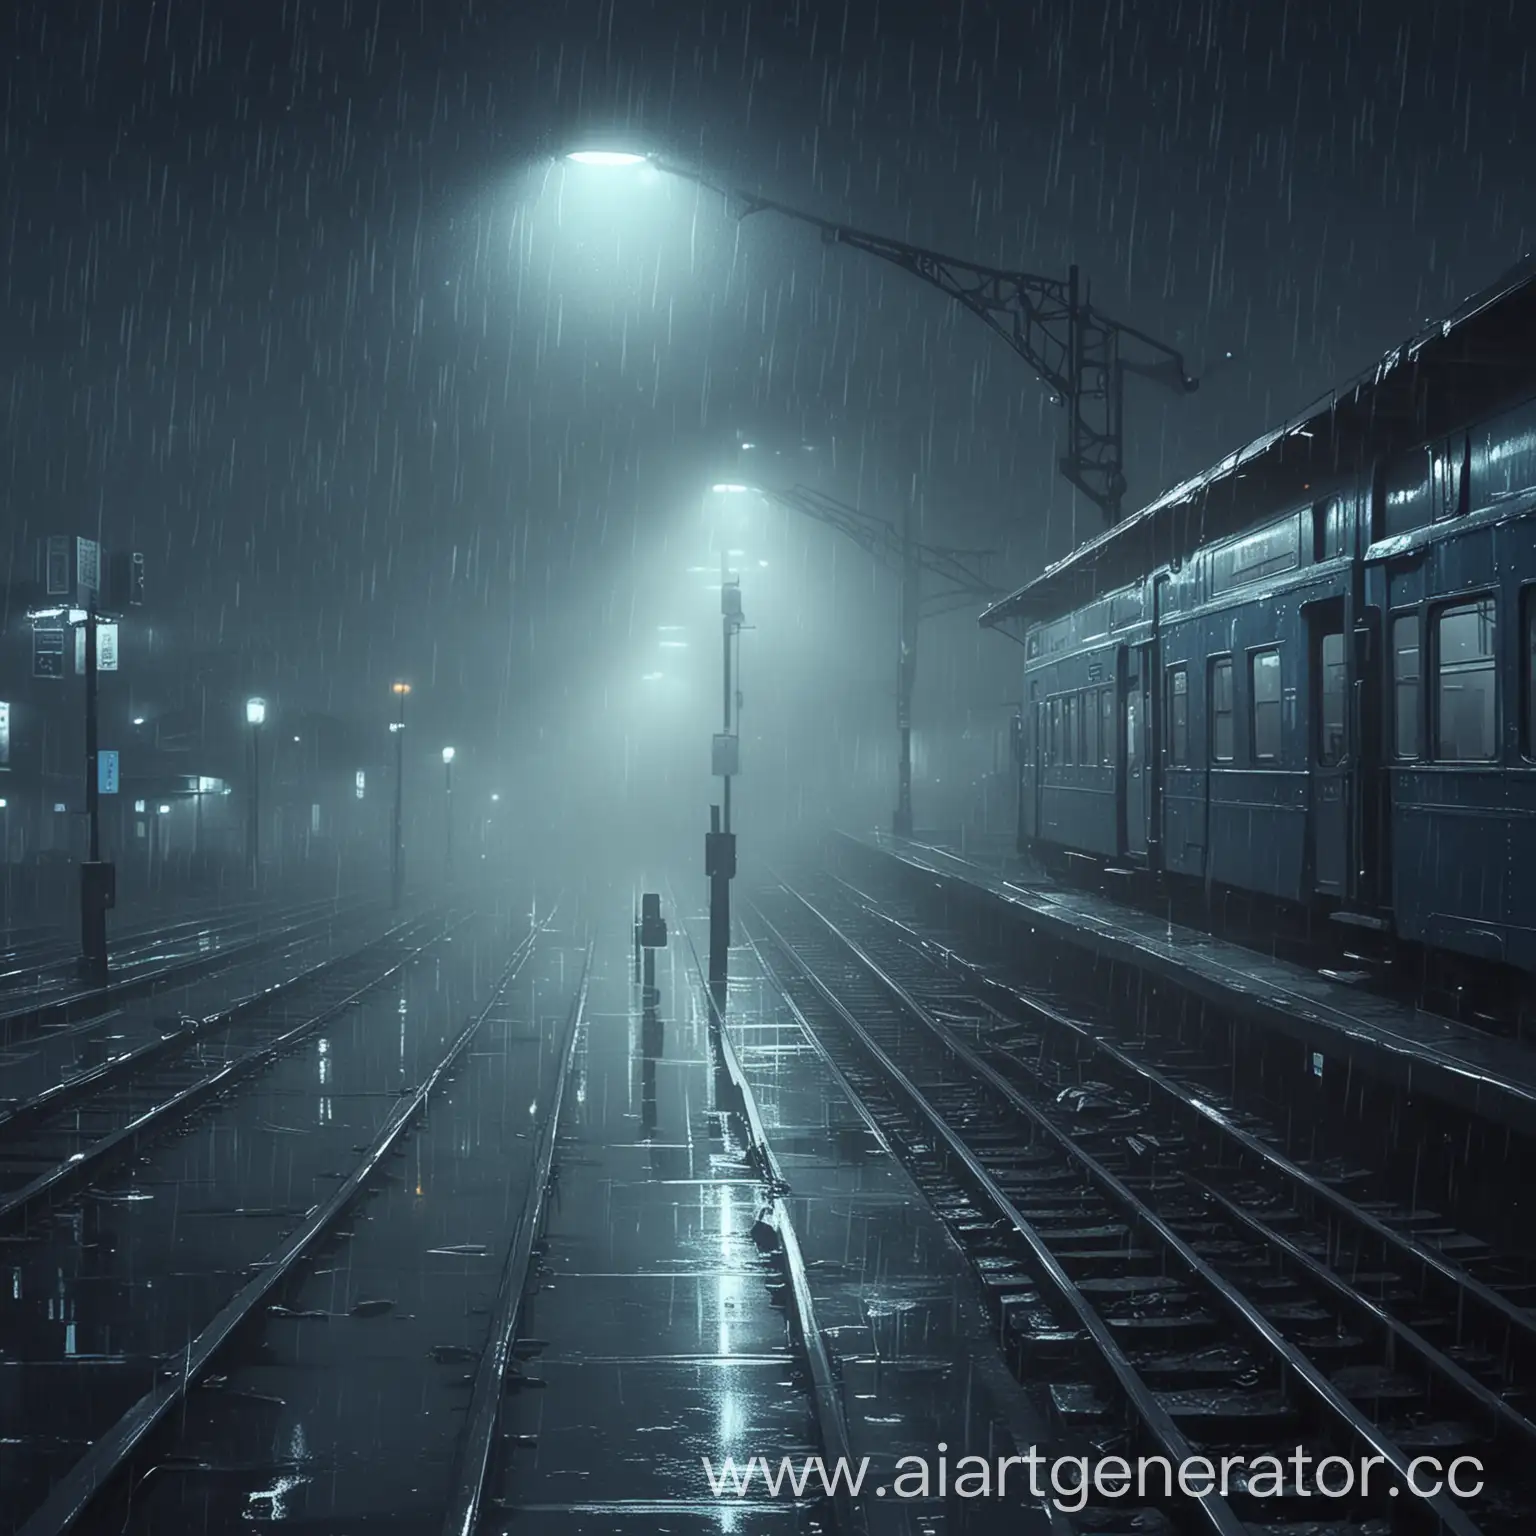 Остановочный пункт, Поезд стоит в ожидании, ночь, туман, Аниме-стиль, нелюдно, дождь, голубо-синий стиль, нагнетание
